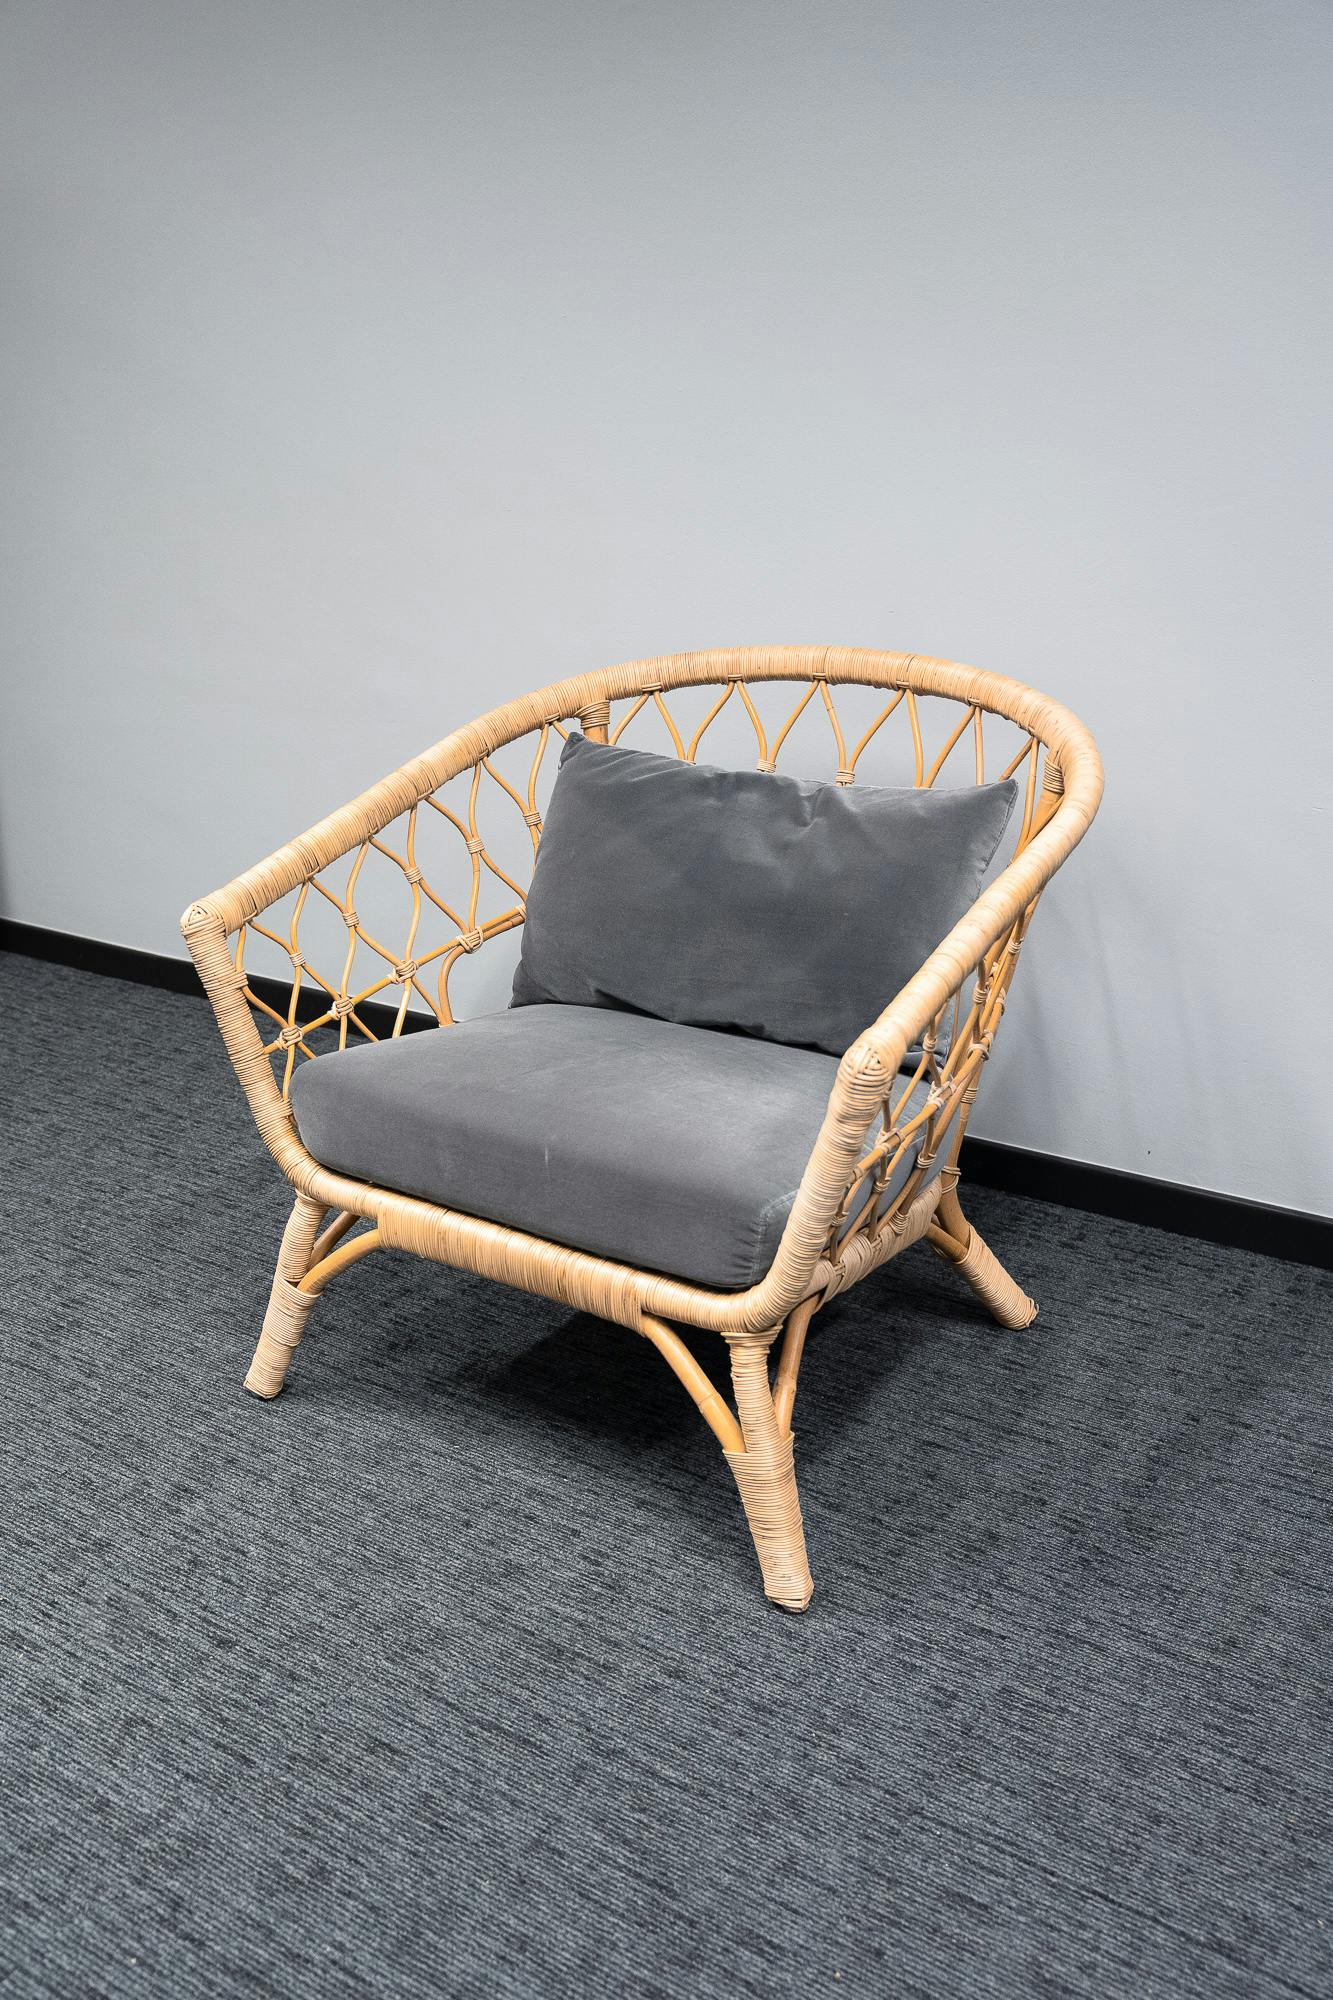 Rieten fauteuil met grijze kussens - Tweedehands kwaliteit "Leunstoelen en luiers" - Relieve Furniture